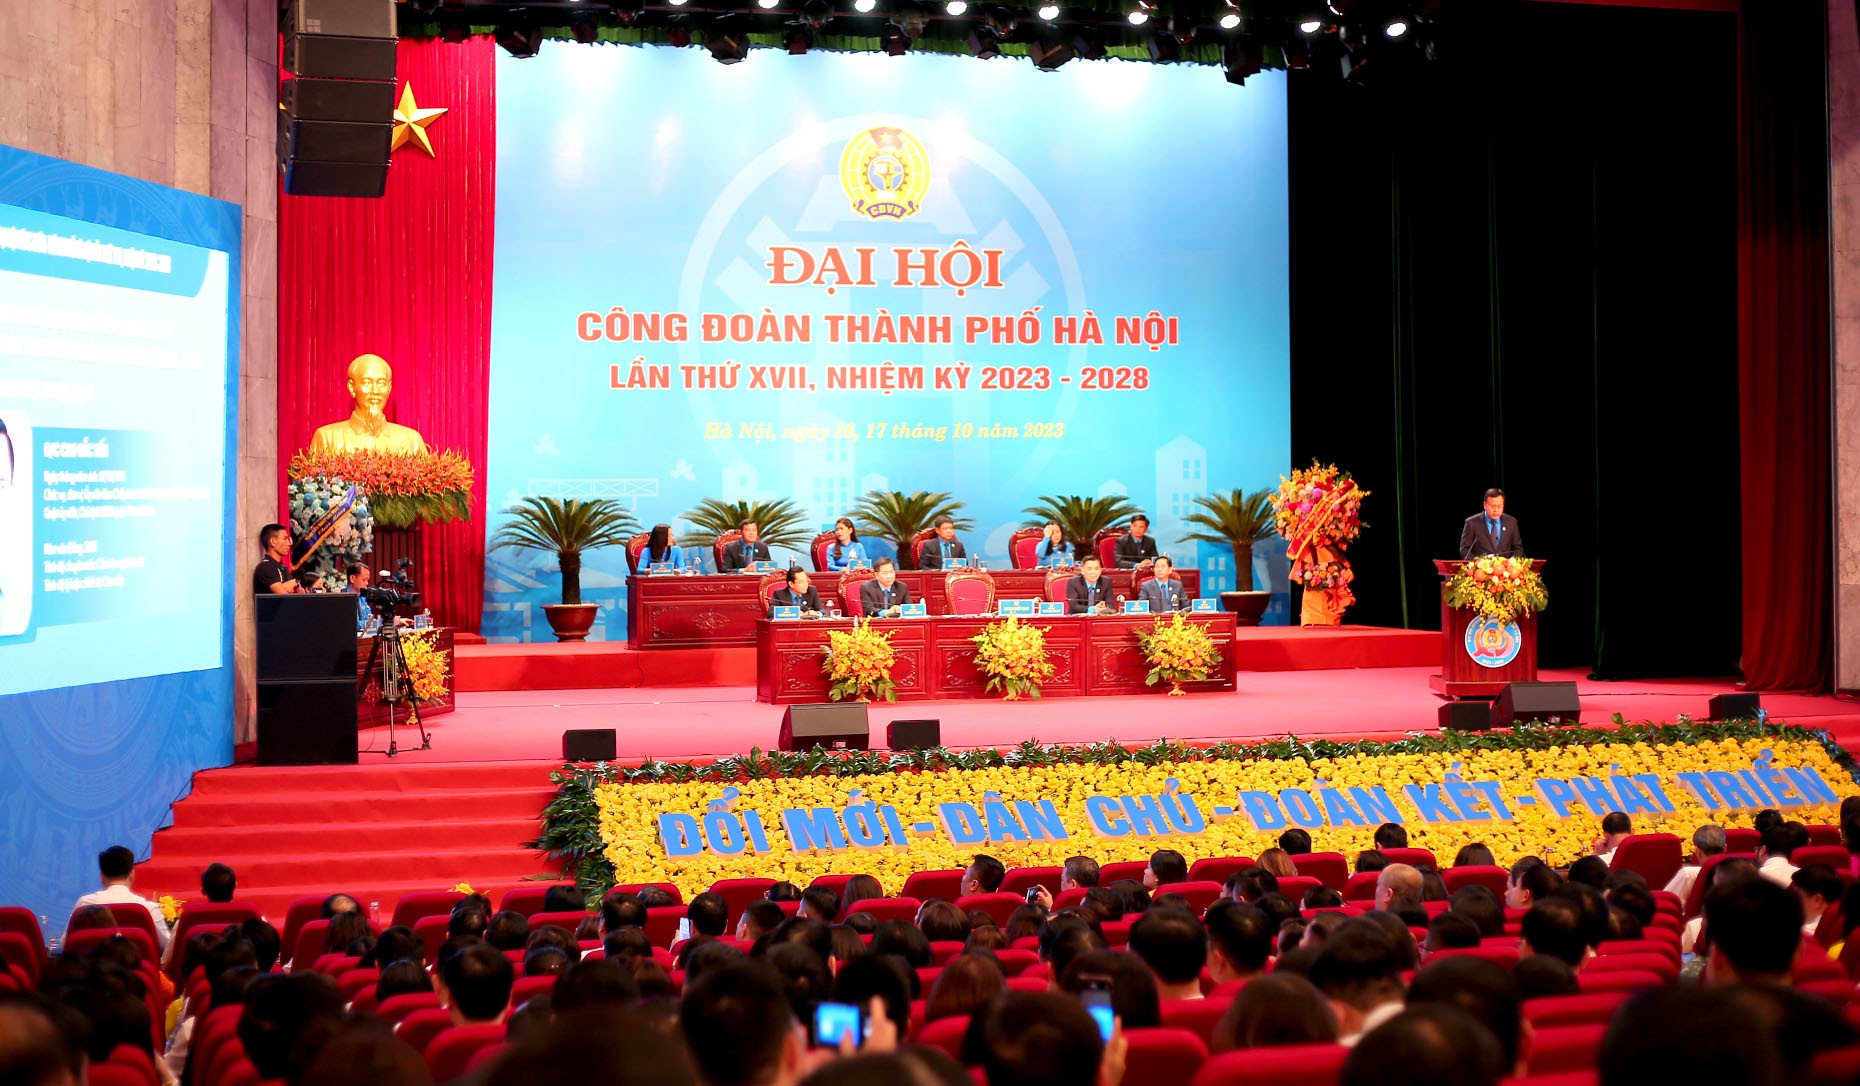 Phiên làm việc thứ hai Đại hội Công đoàn thành phố Hà Nội lần thứ XVII, nhiệm kỳ 2023 - 2028